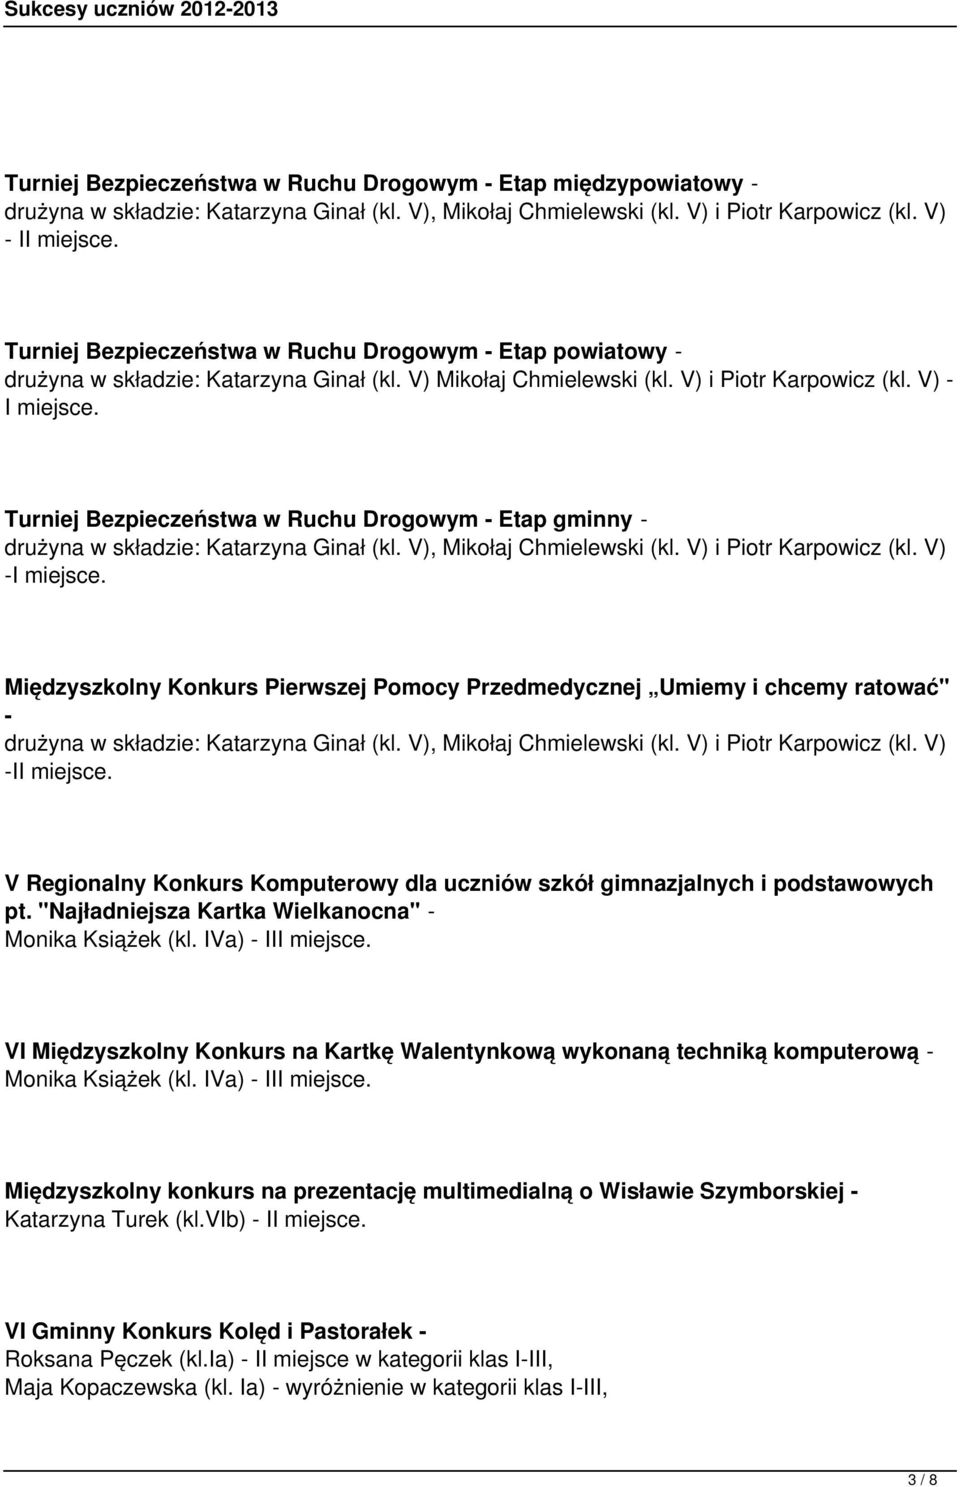 Turniej Bezpieczeństwa w Ruchu Drogowym - Etap gminny - drużyna w składzie: Katarzyna Ginał (kl. V), Mikołaj Chmielewski (kl. V) i Piotr Karpowicz (kl. V) -I miejsce.